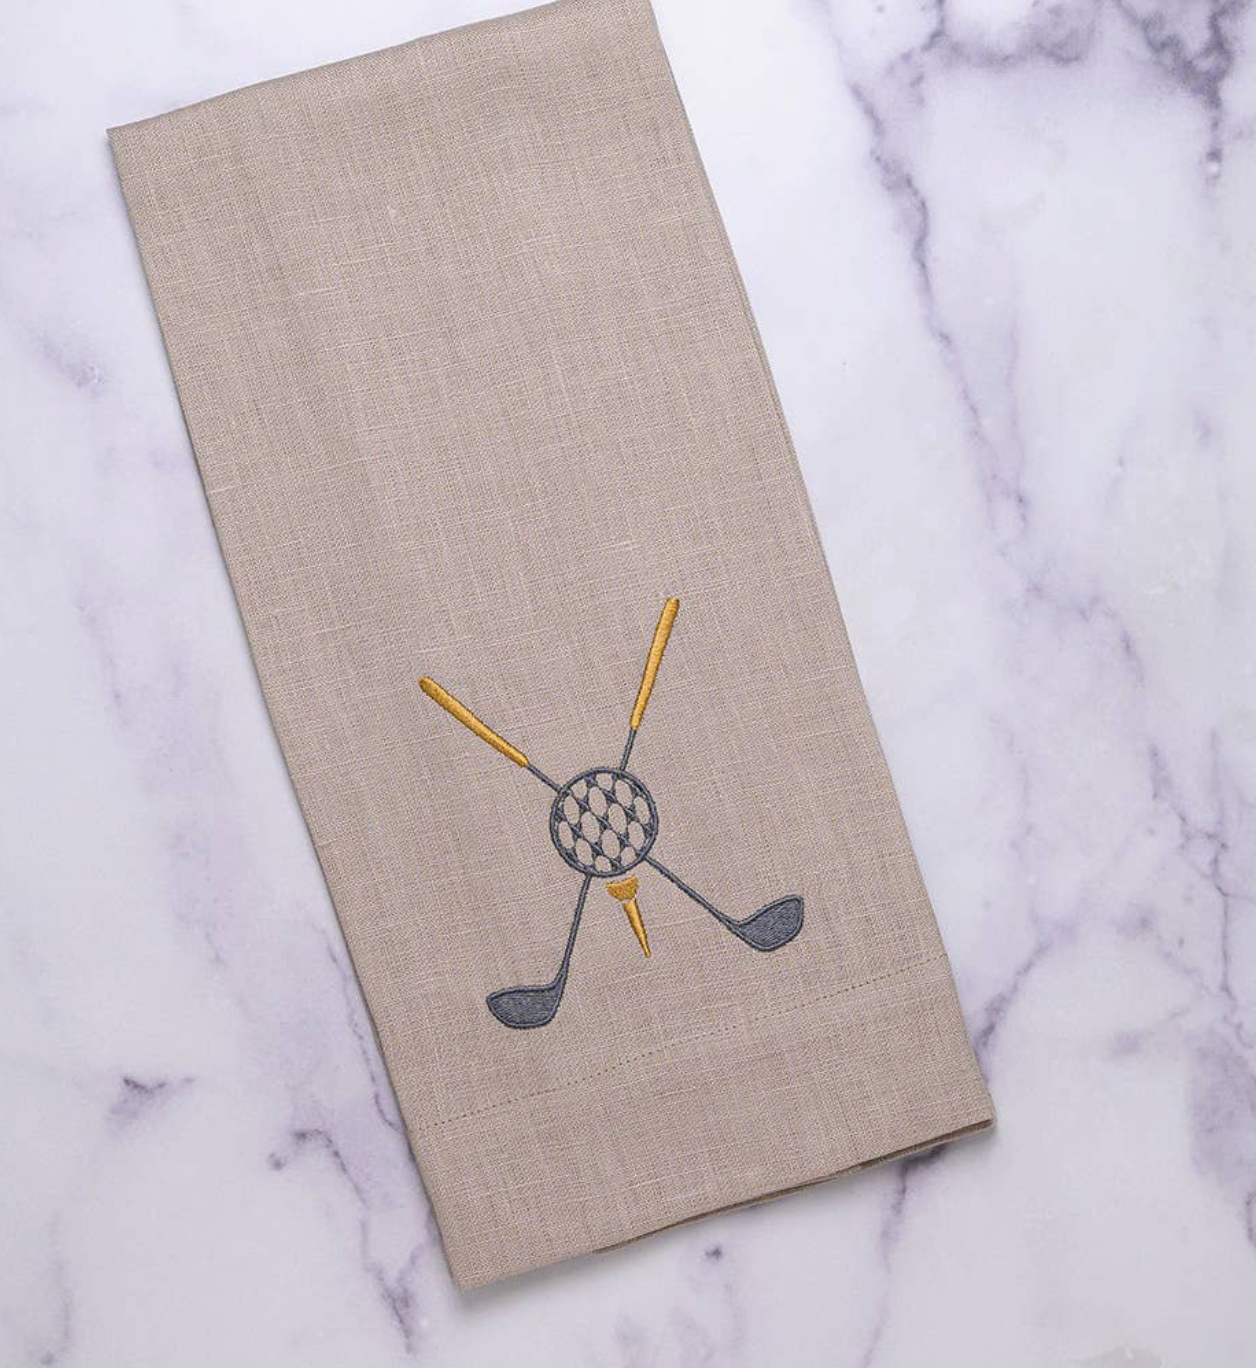 Embroidered Golf Emblem - European Linen Towel